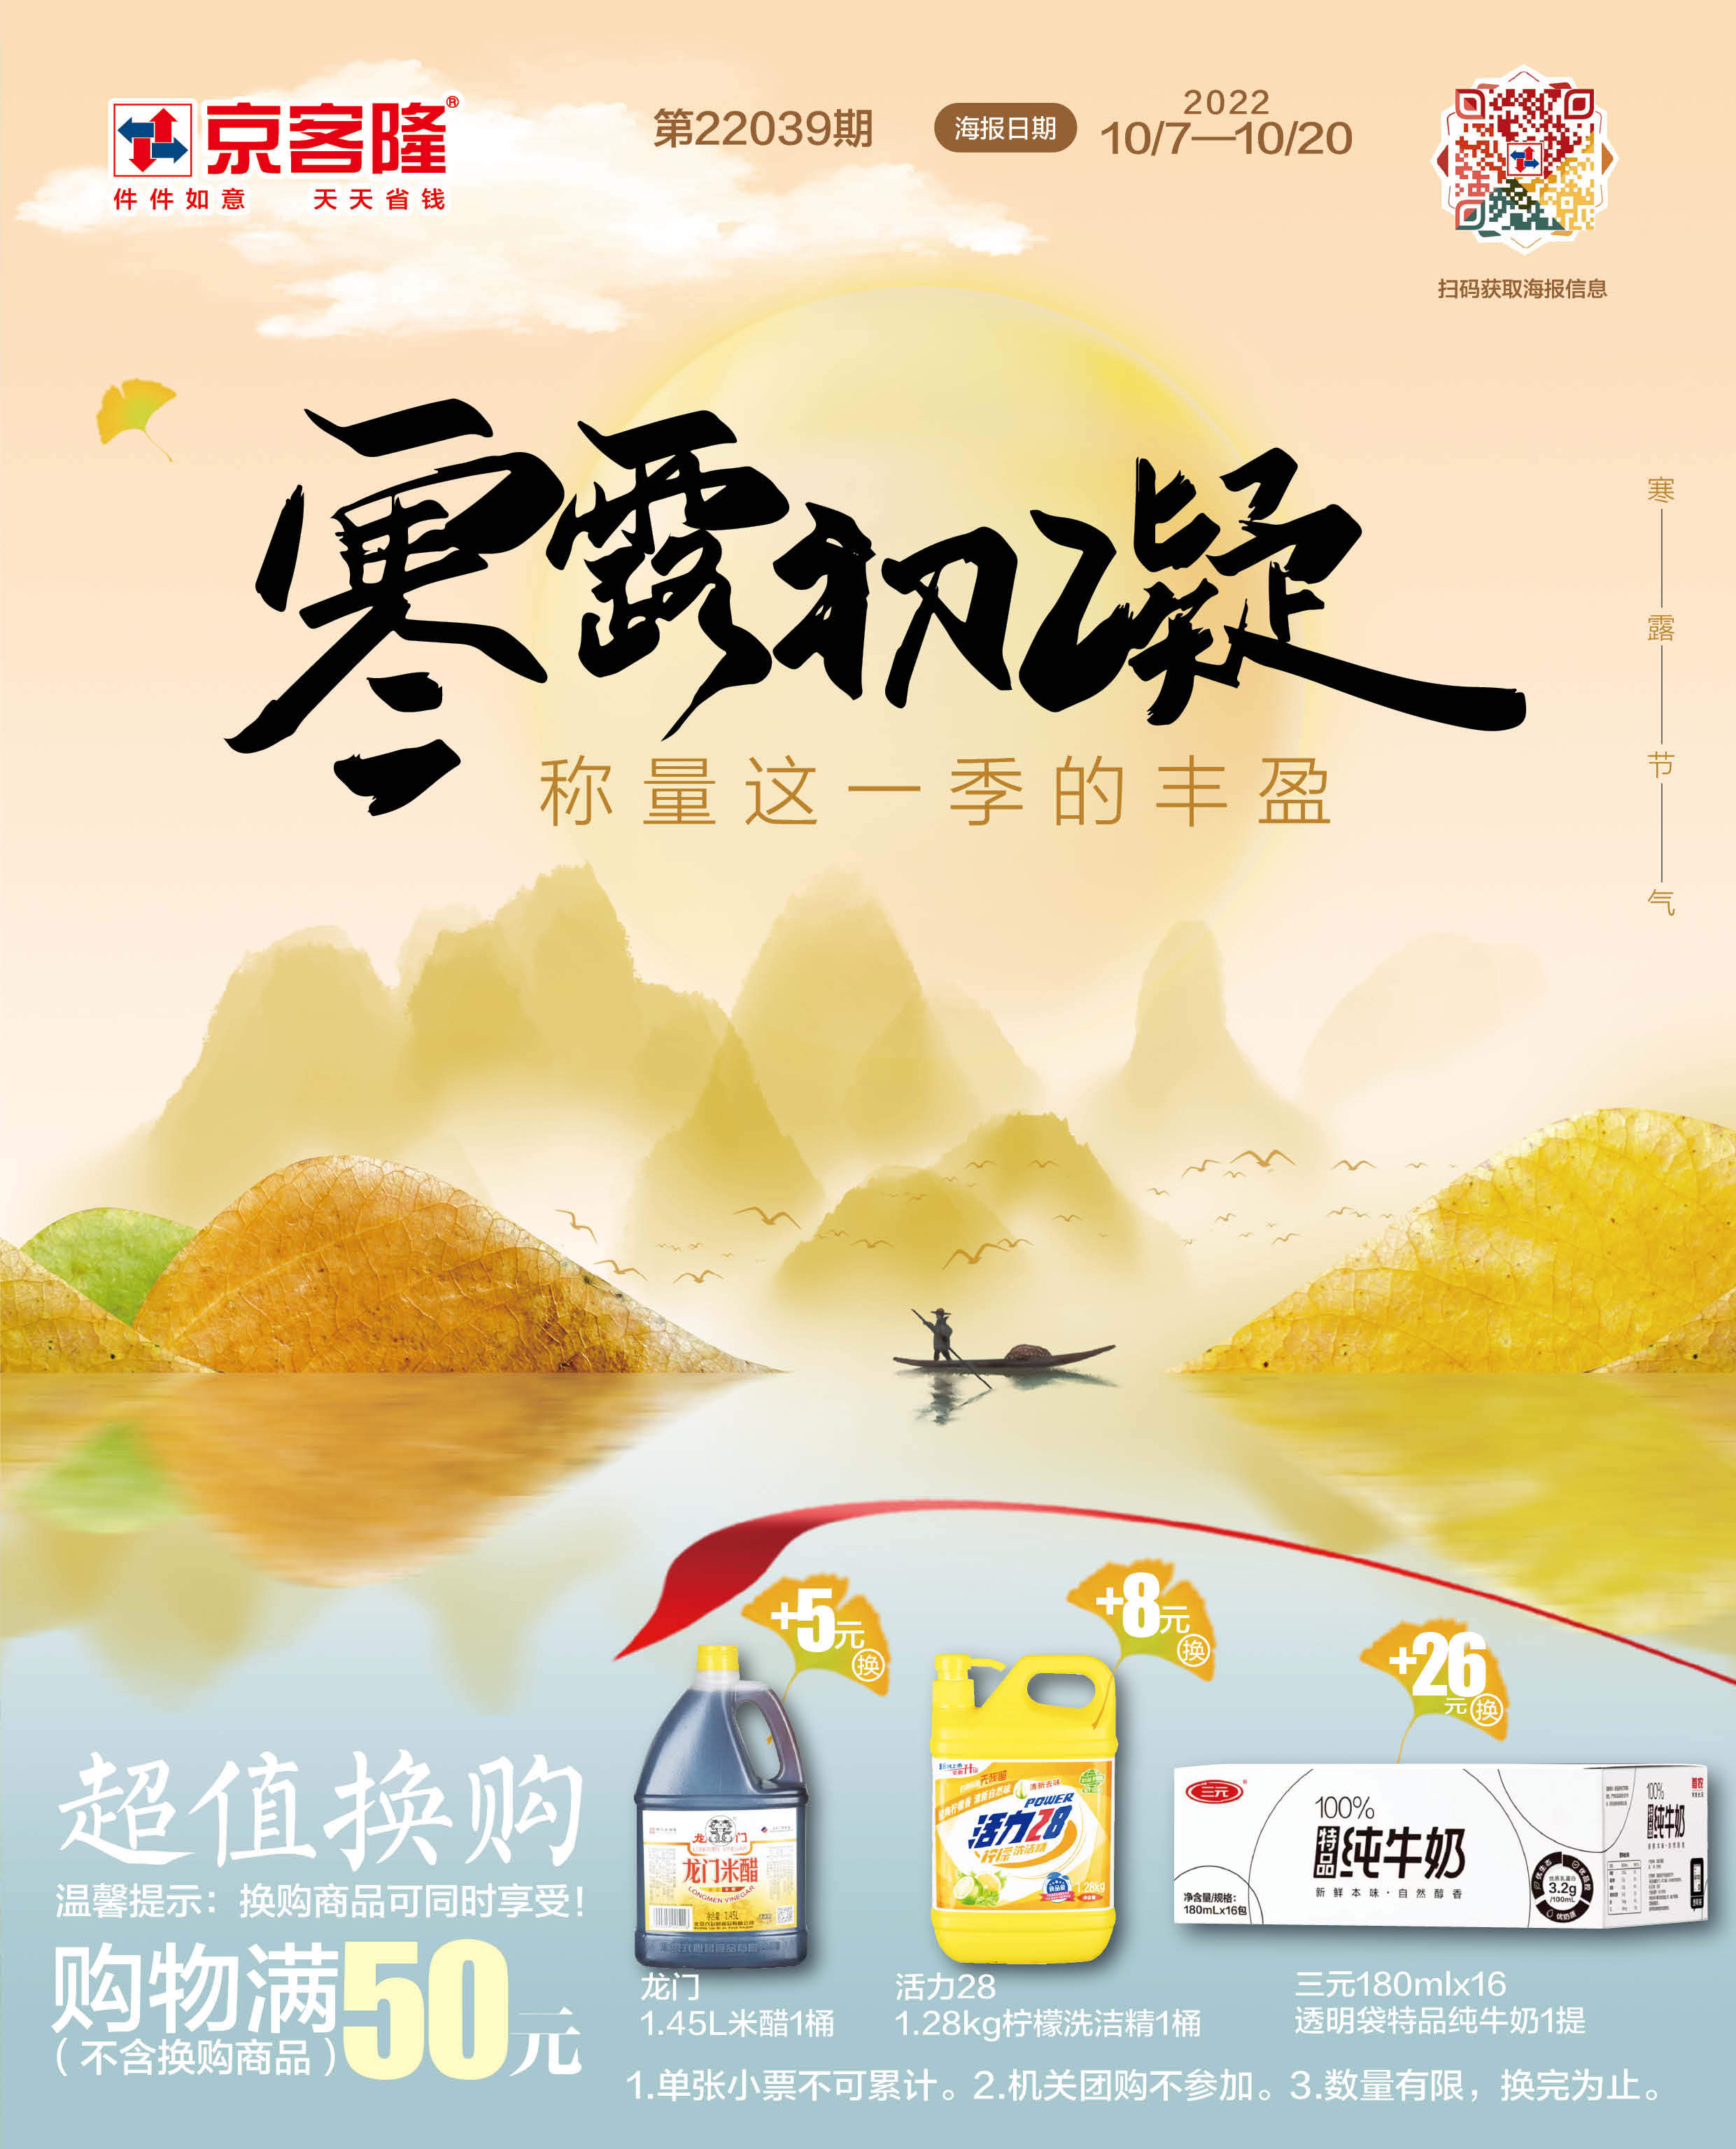 北京京客隆超市促销海报(第22039期)